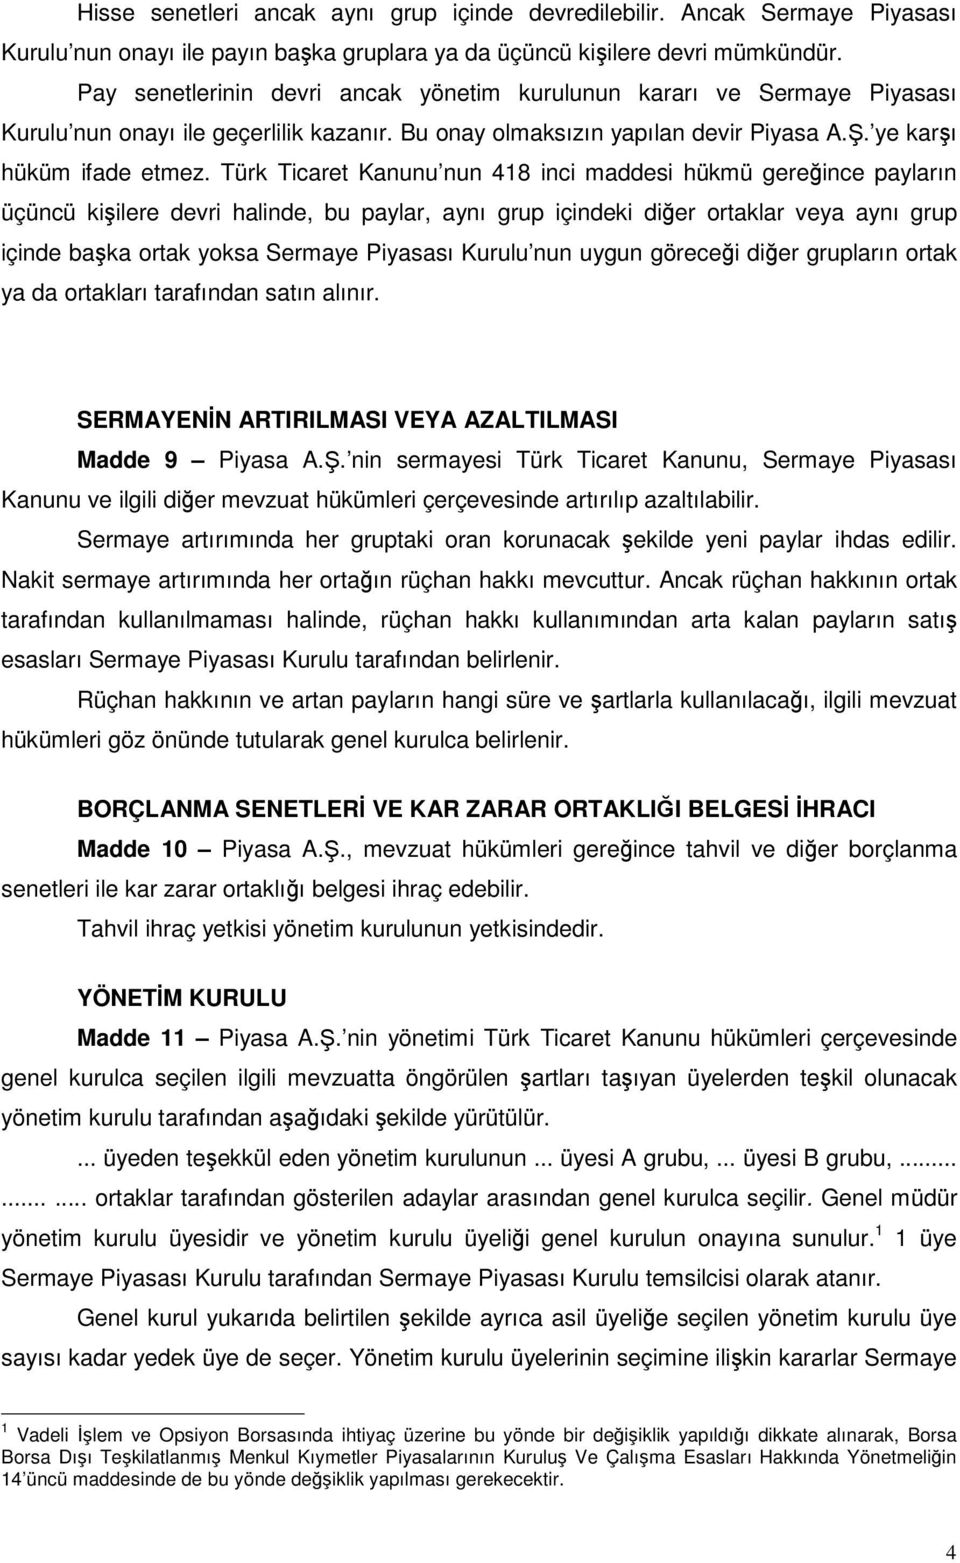 Türk Ticaret Kanunu nun 418 inci maddesi hükmü gereince payların üçüncü kiilere devri halinde, bu paylar, aynı grup içindeki dier ortaklar veya aynı grup içinde baka ortak yoksa Sermaye Piyasası